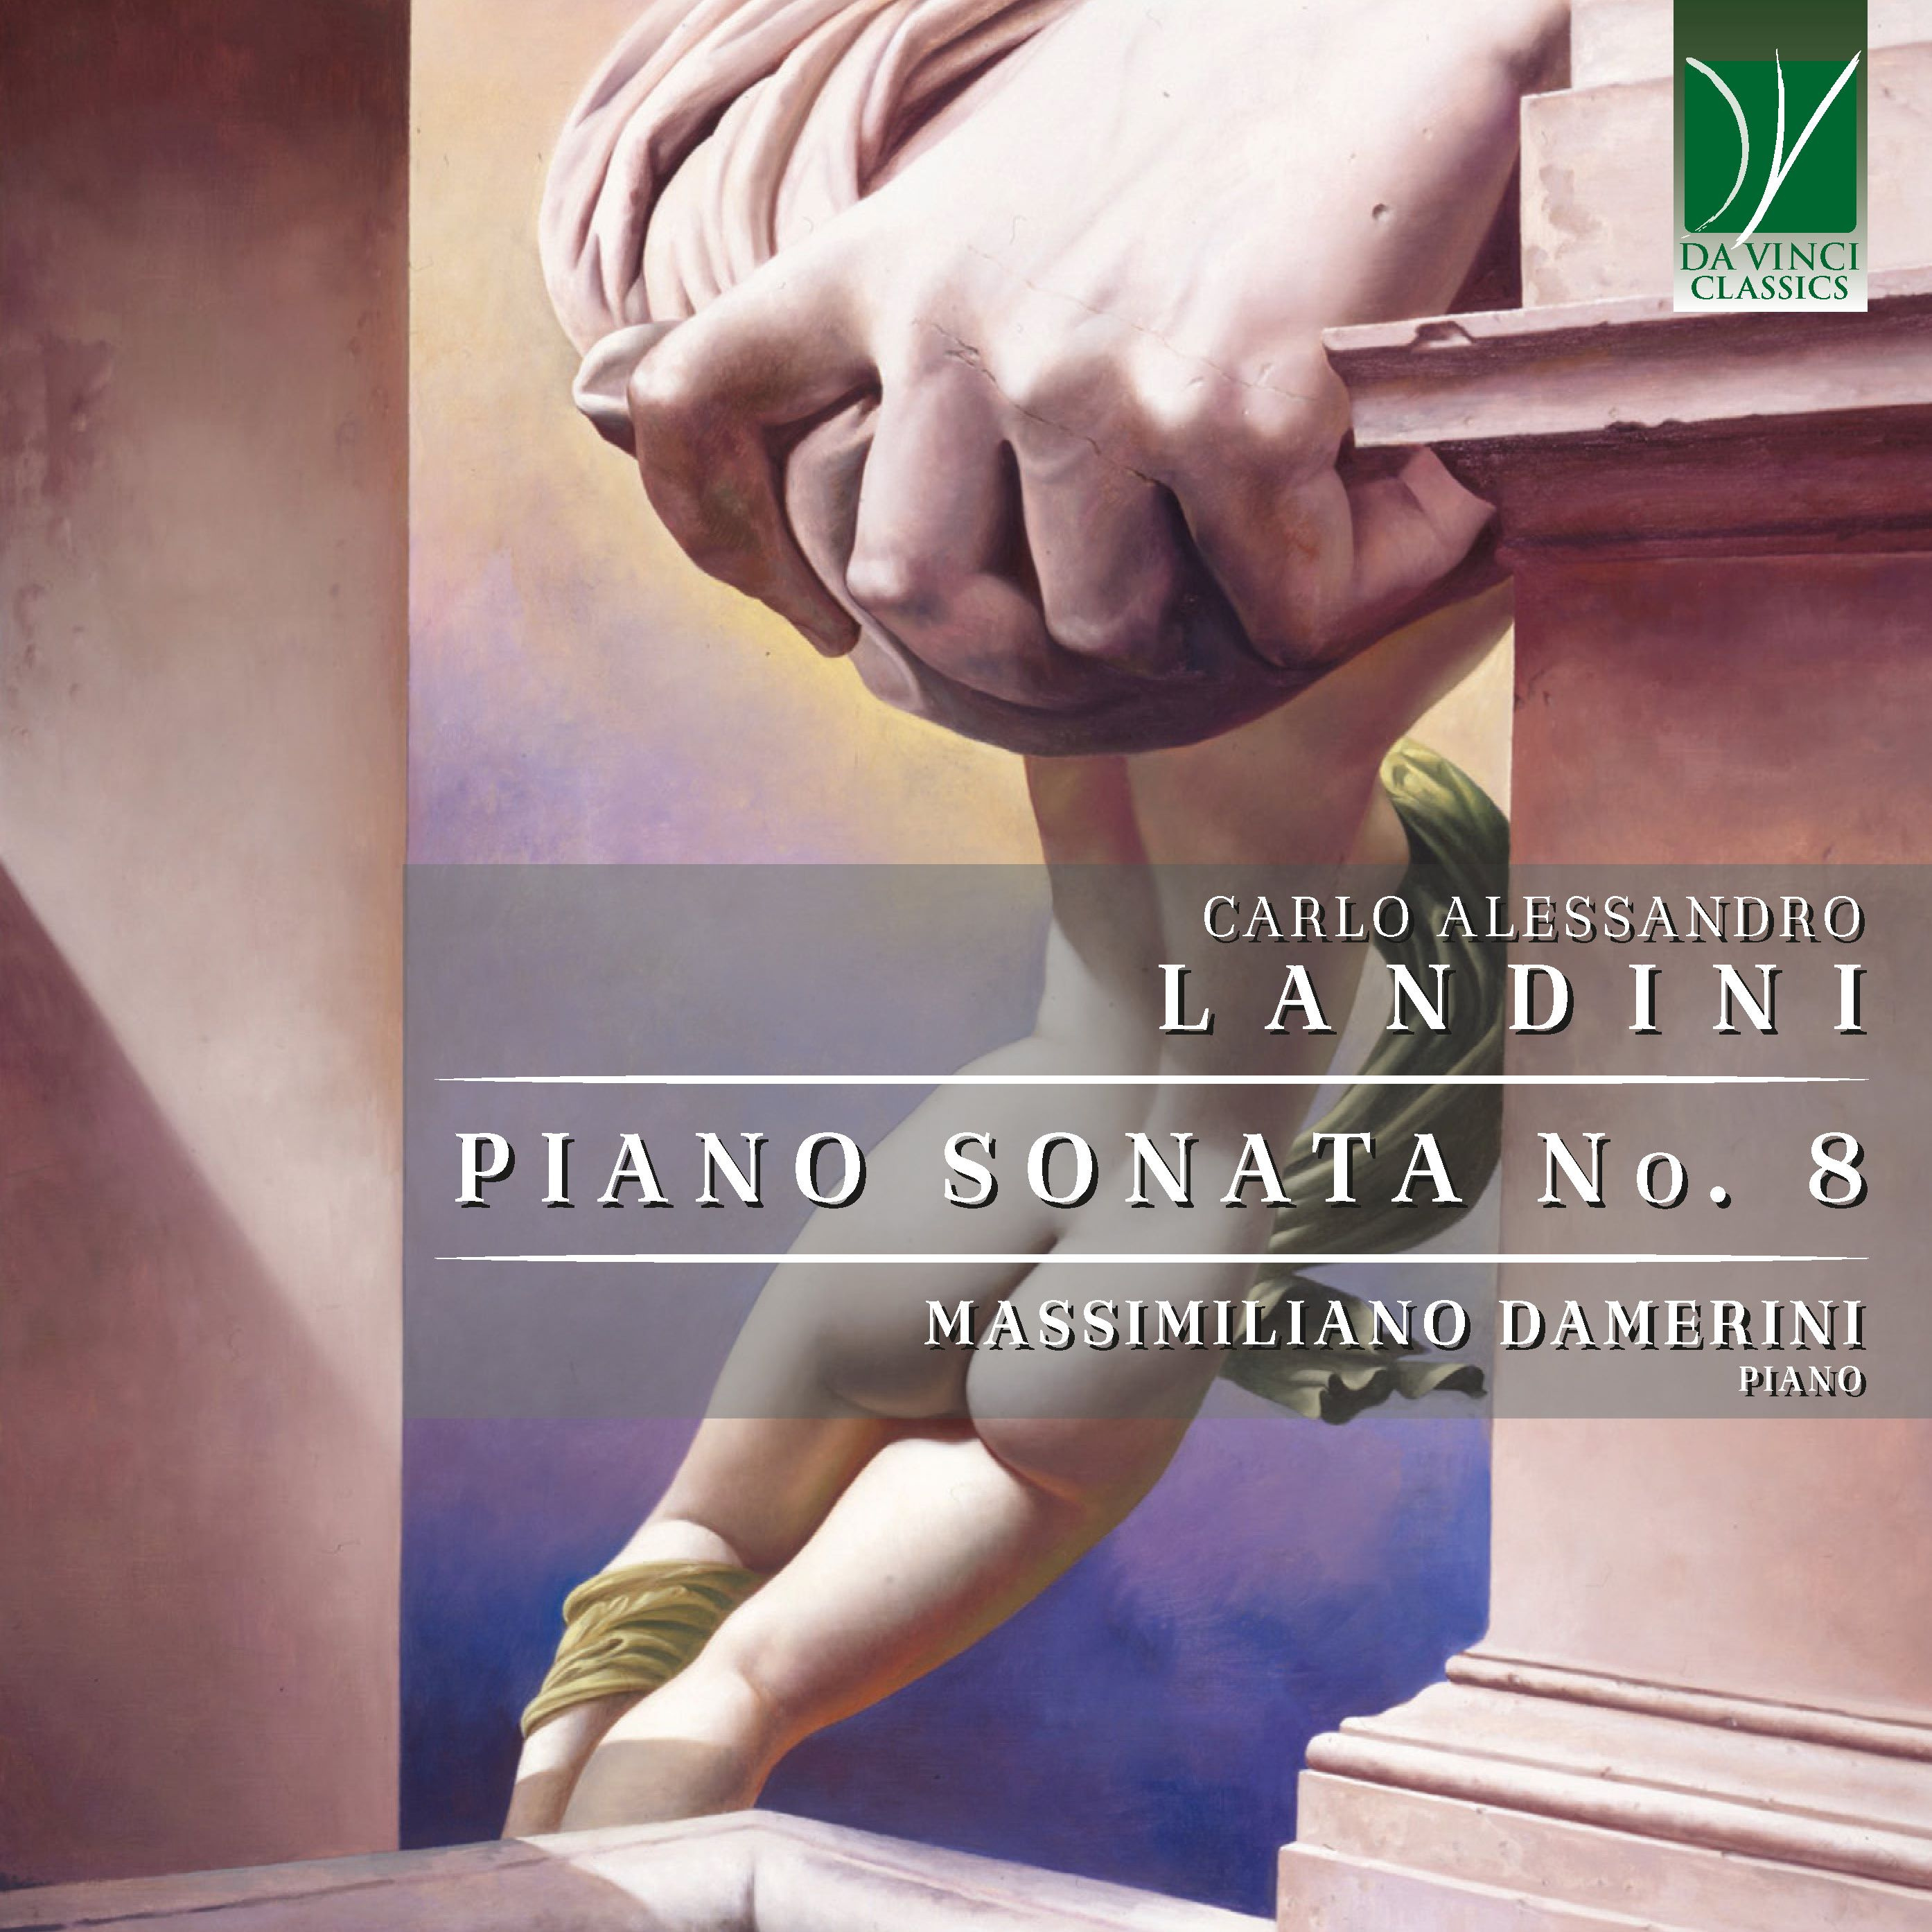 CARLO ALESSANDRO LANDINI: PIANO SONATA NO. 8